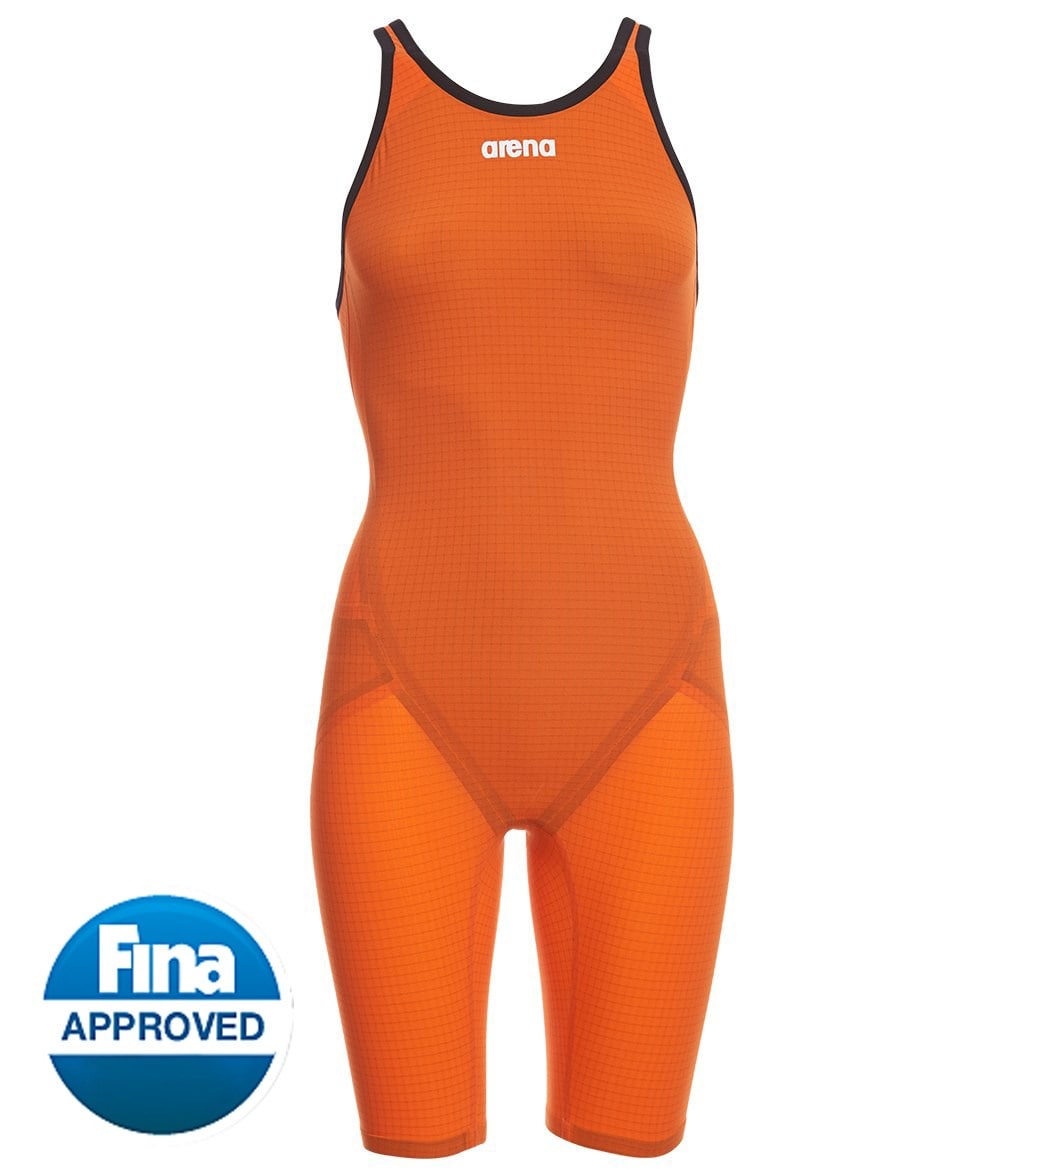 Arena Women's Limited Edition Powerskin Carbon Flex Vx Open Back Tech Suit Swimsuit - Orange 32 Carbon/Elastane/Nylon - Swimoutlet.com